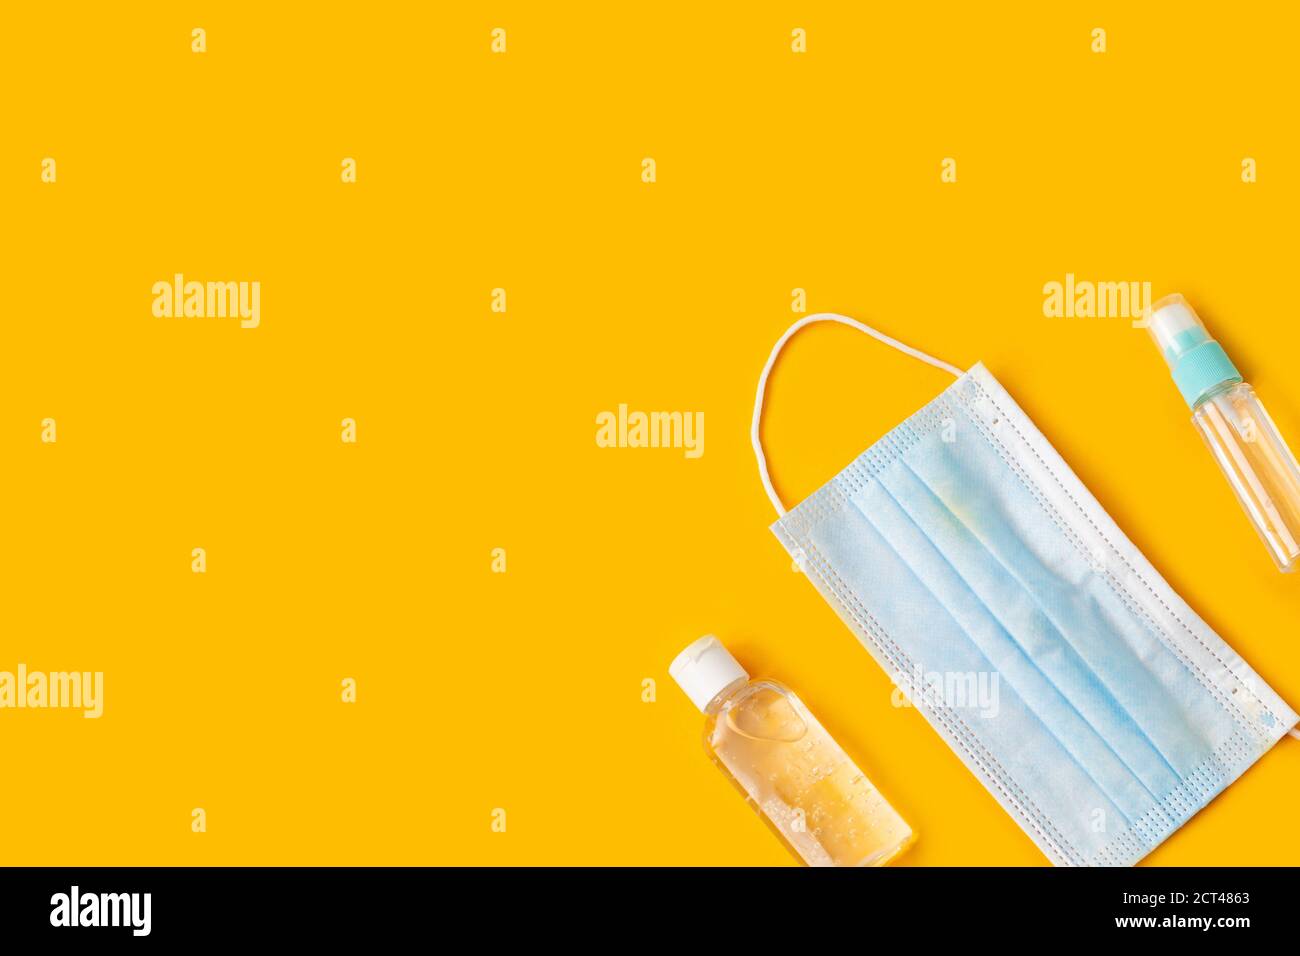 Maschere facciali e bottiglie igienizzanti per le mani su sfondo giallo. Foto Stock